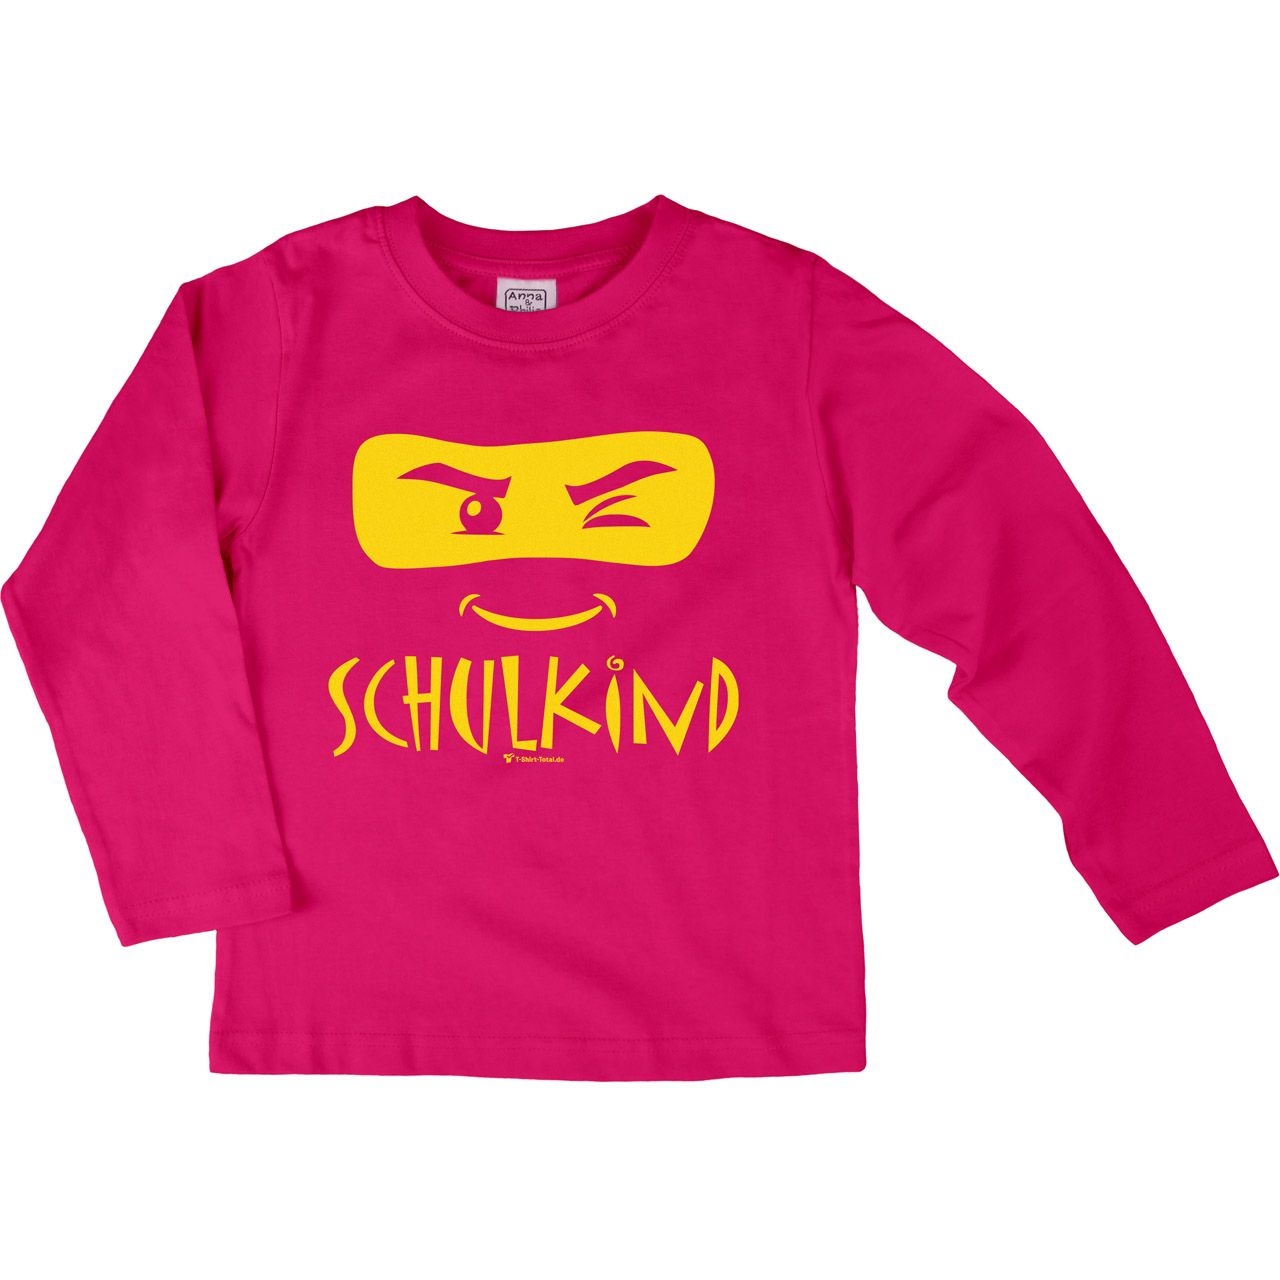 Schulkind Maske Kinder Langarm Shirt pink 122 / 128